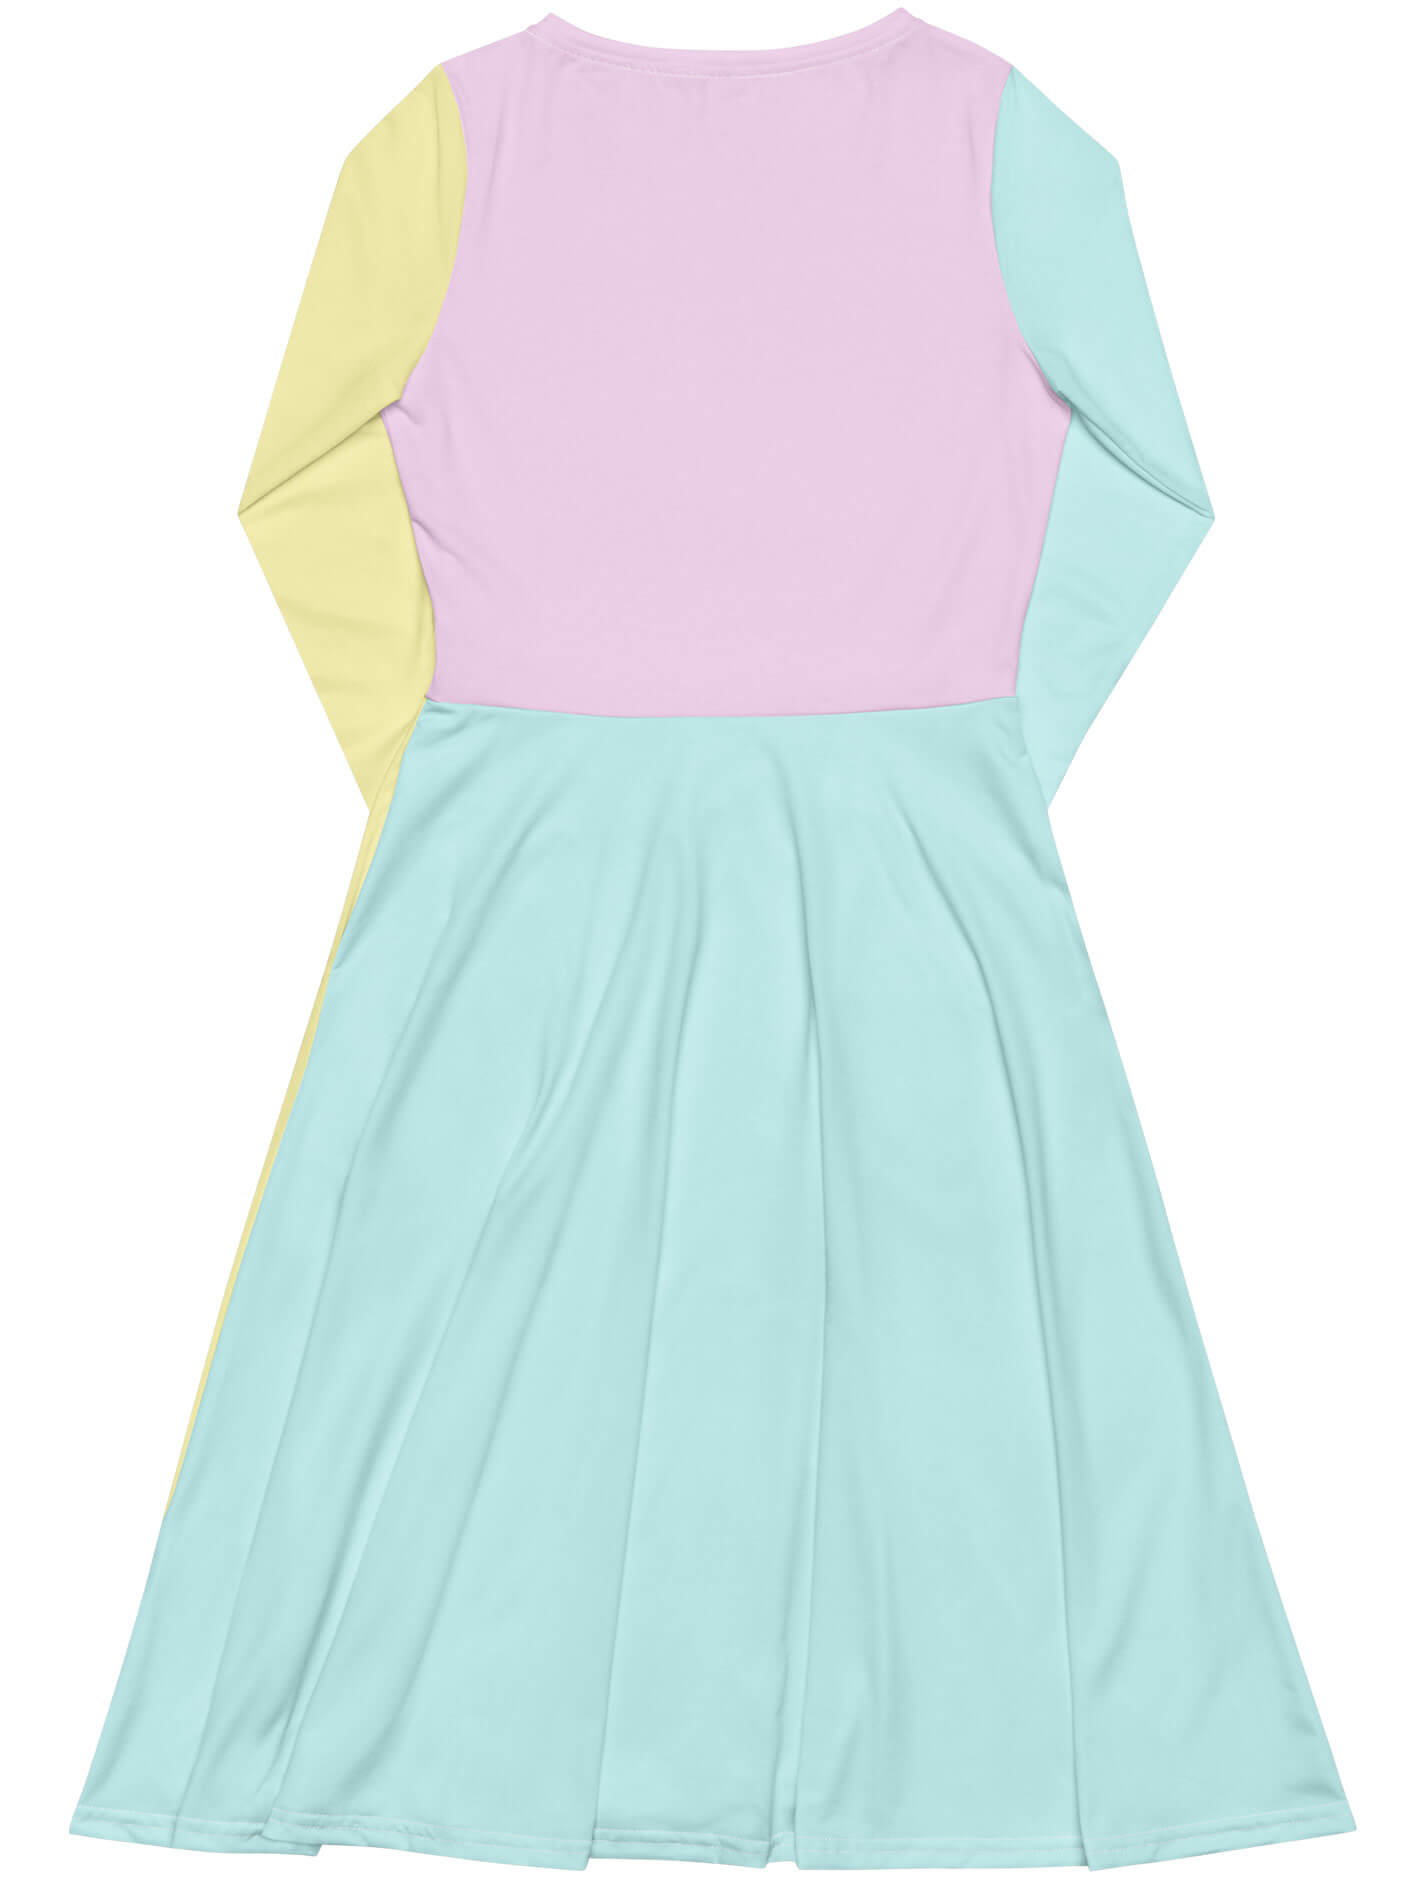 Kawaii pastel colorblock dress.